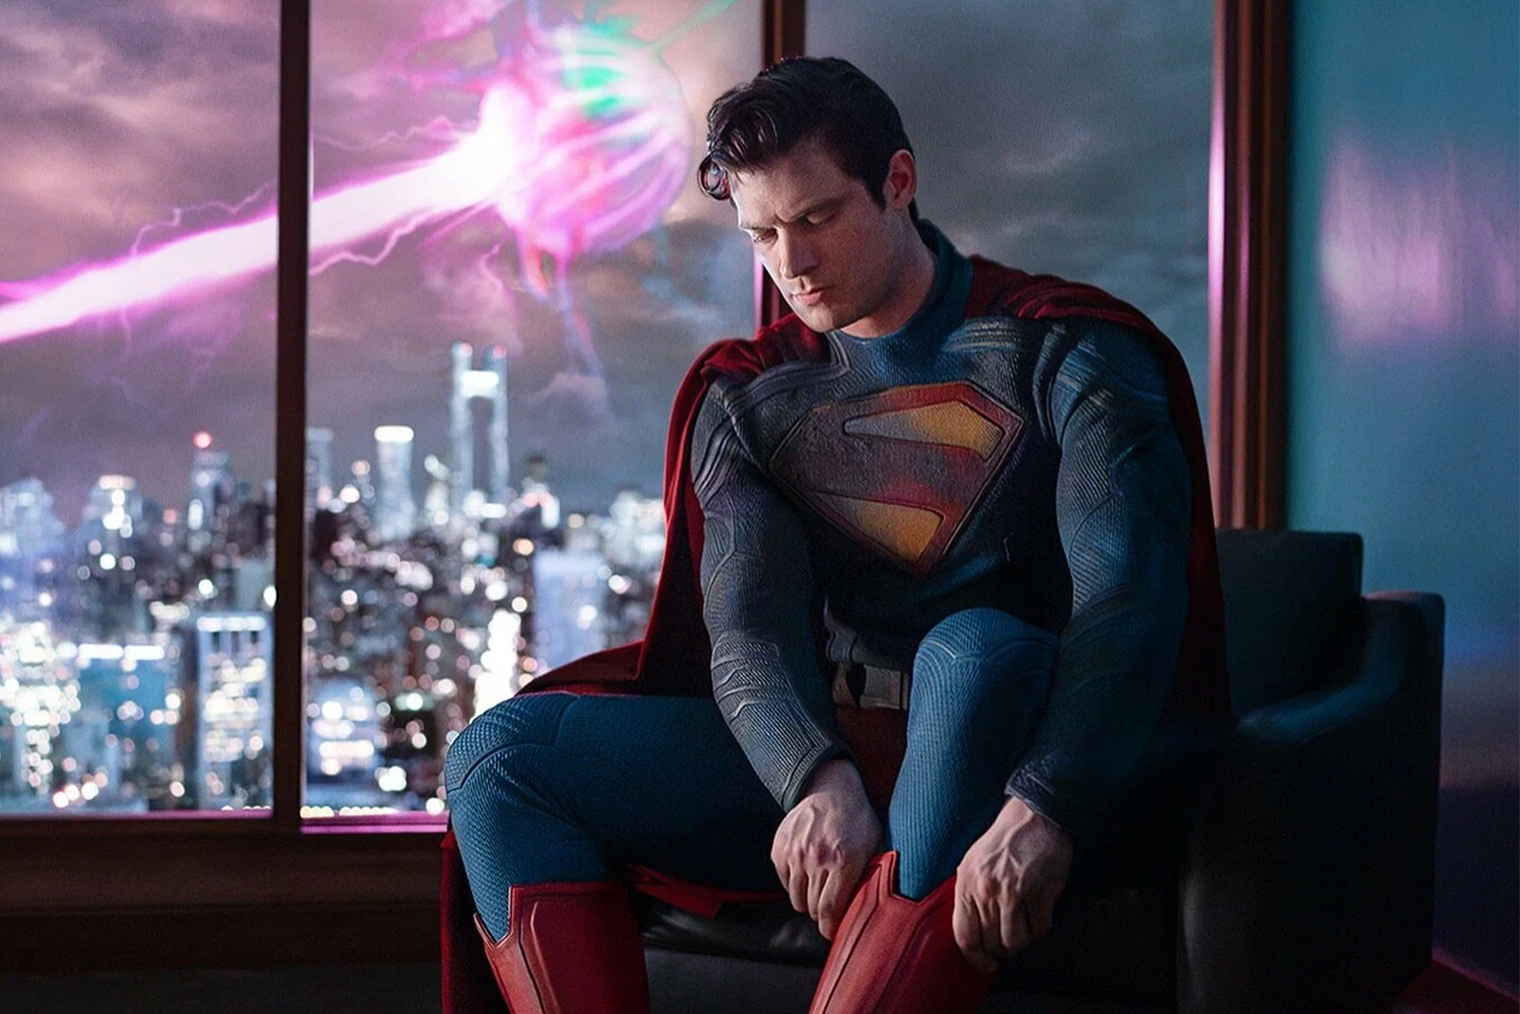 Судя по кадру со съемок, Супермен в фильме будет носить красные трусы поверх костюма — как в большинстве комиксов. Кадр: DC Studios